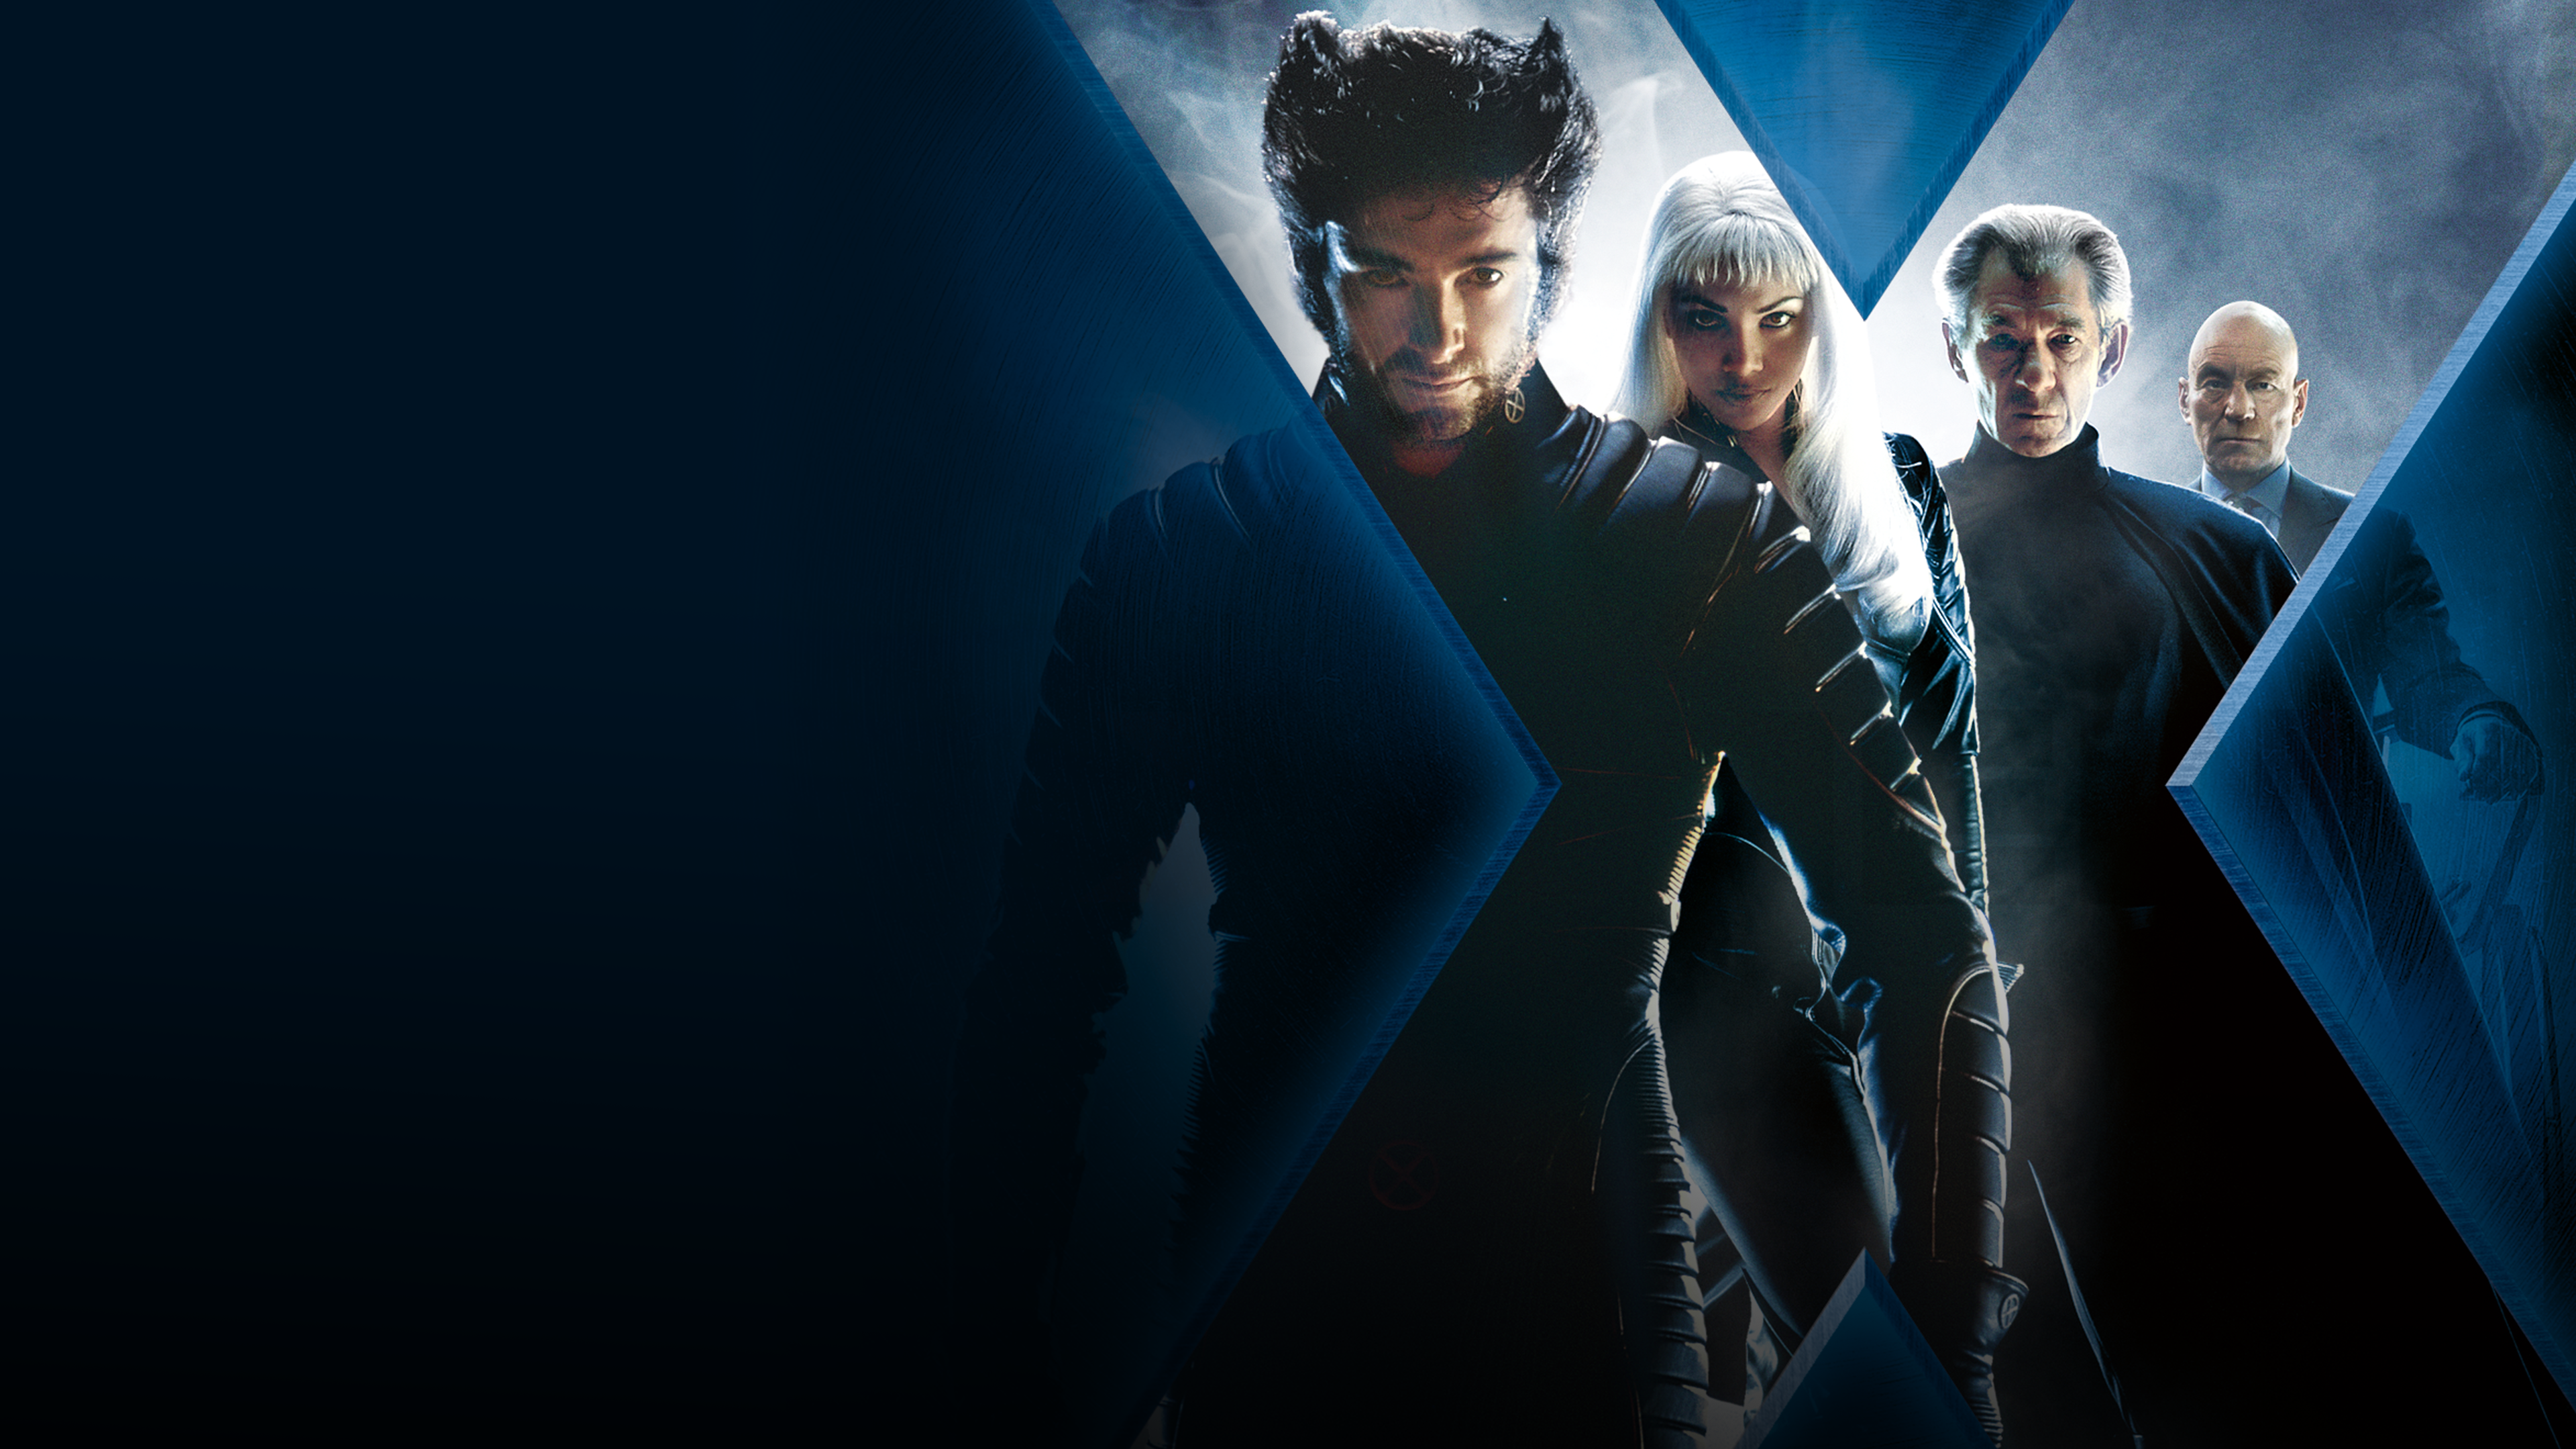 X-Men: O Filme